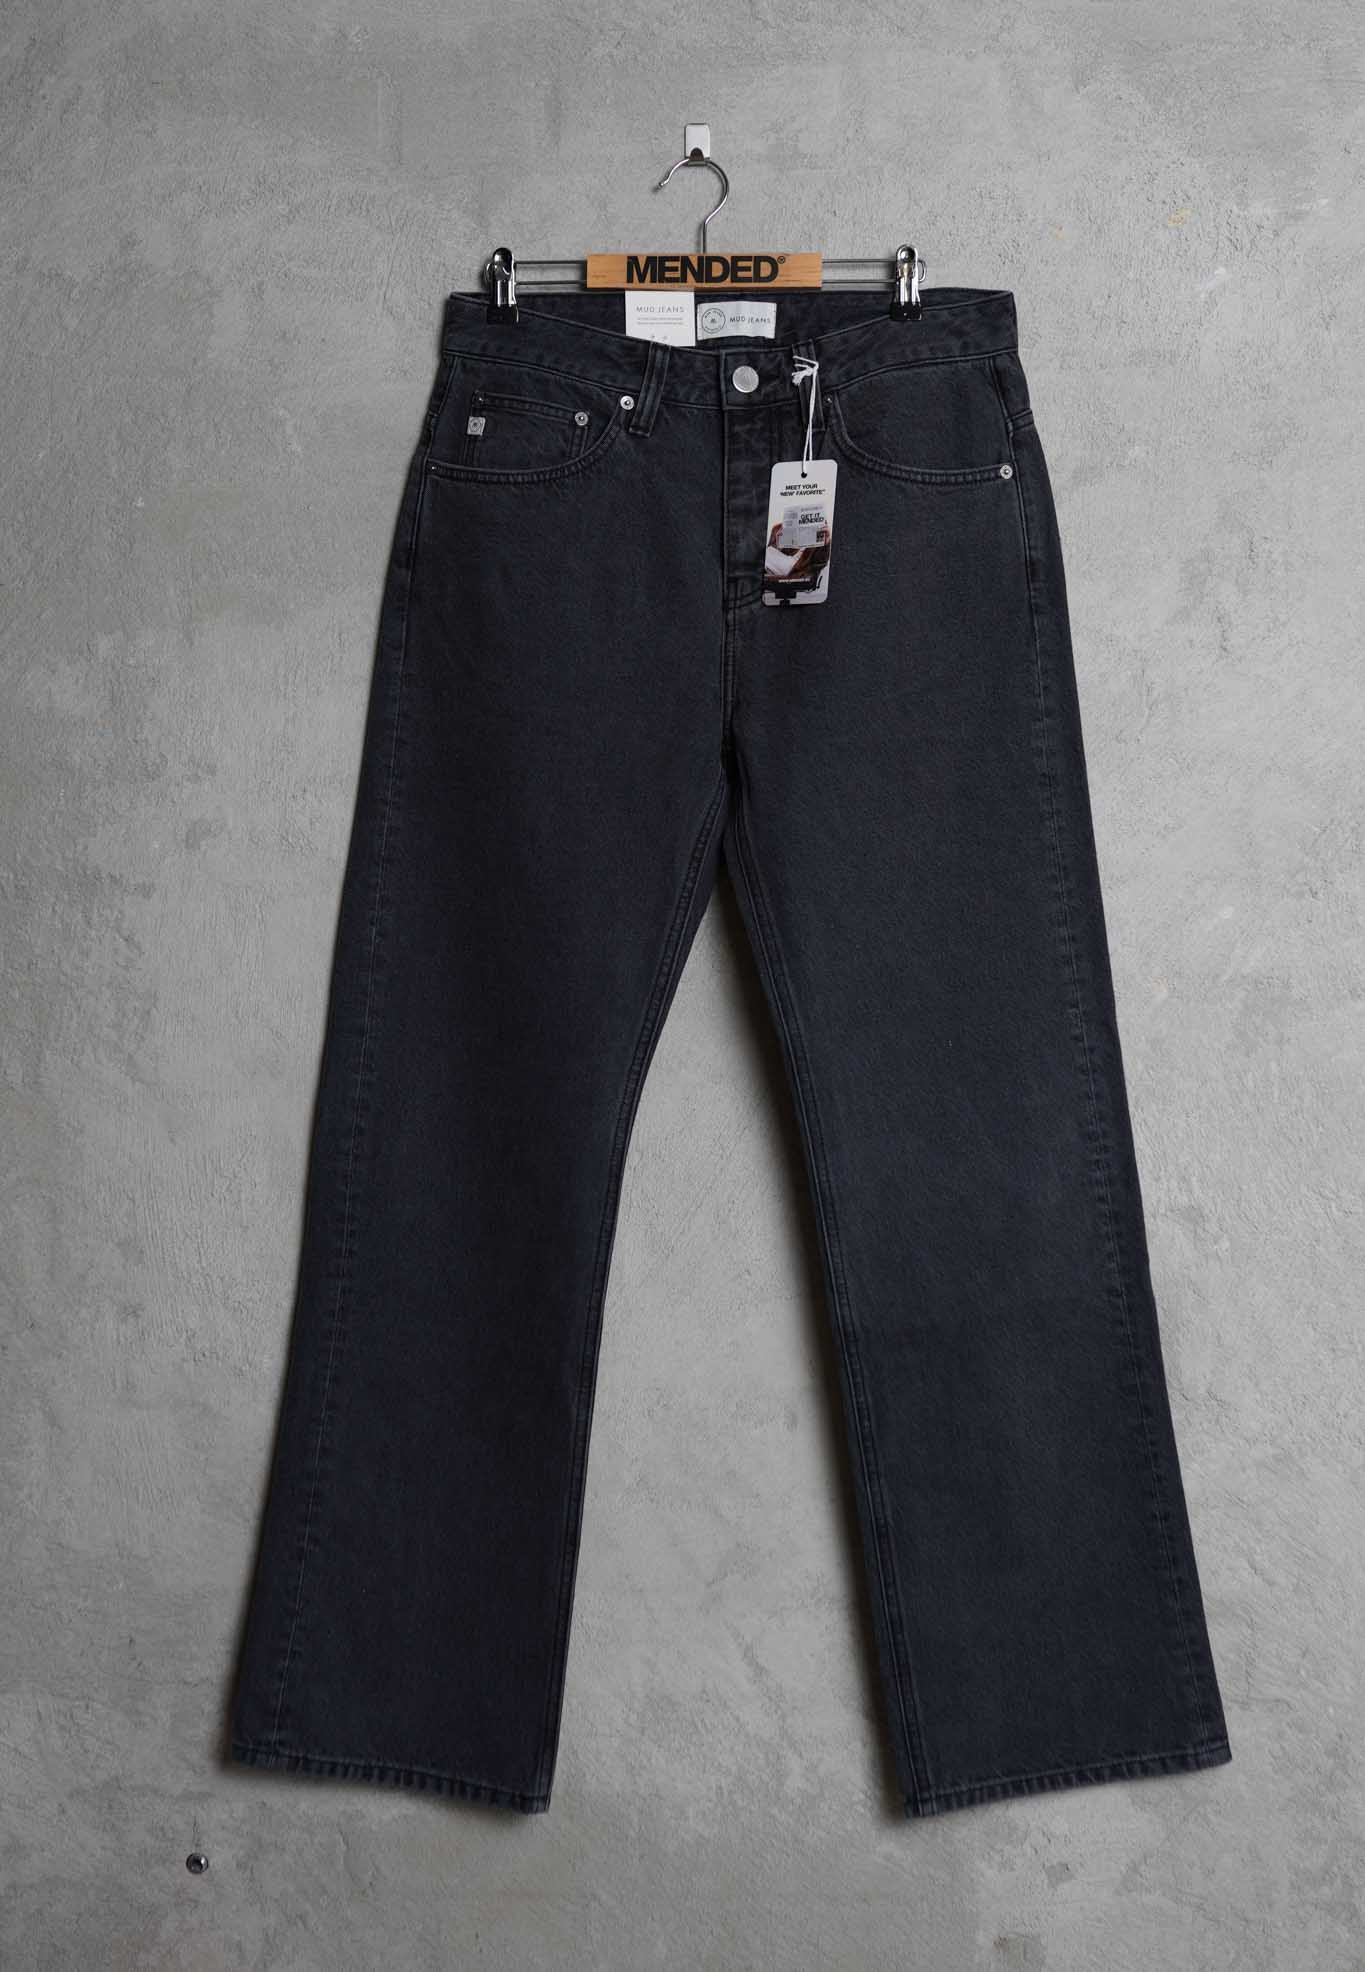 Men - MUD Jeans - Loose James - Used Black